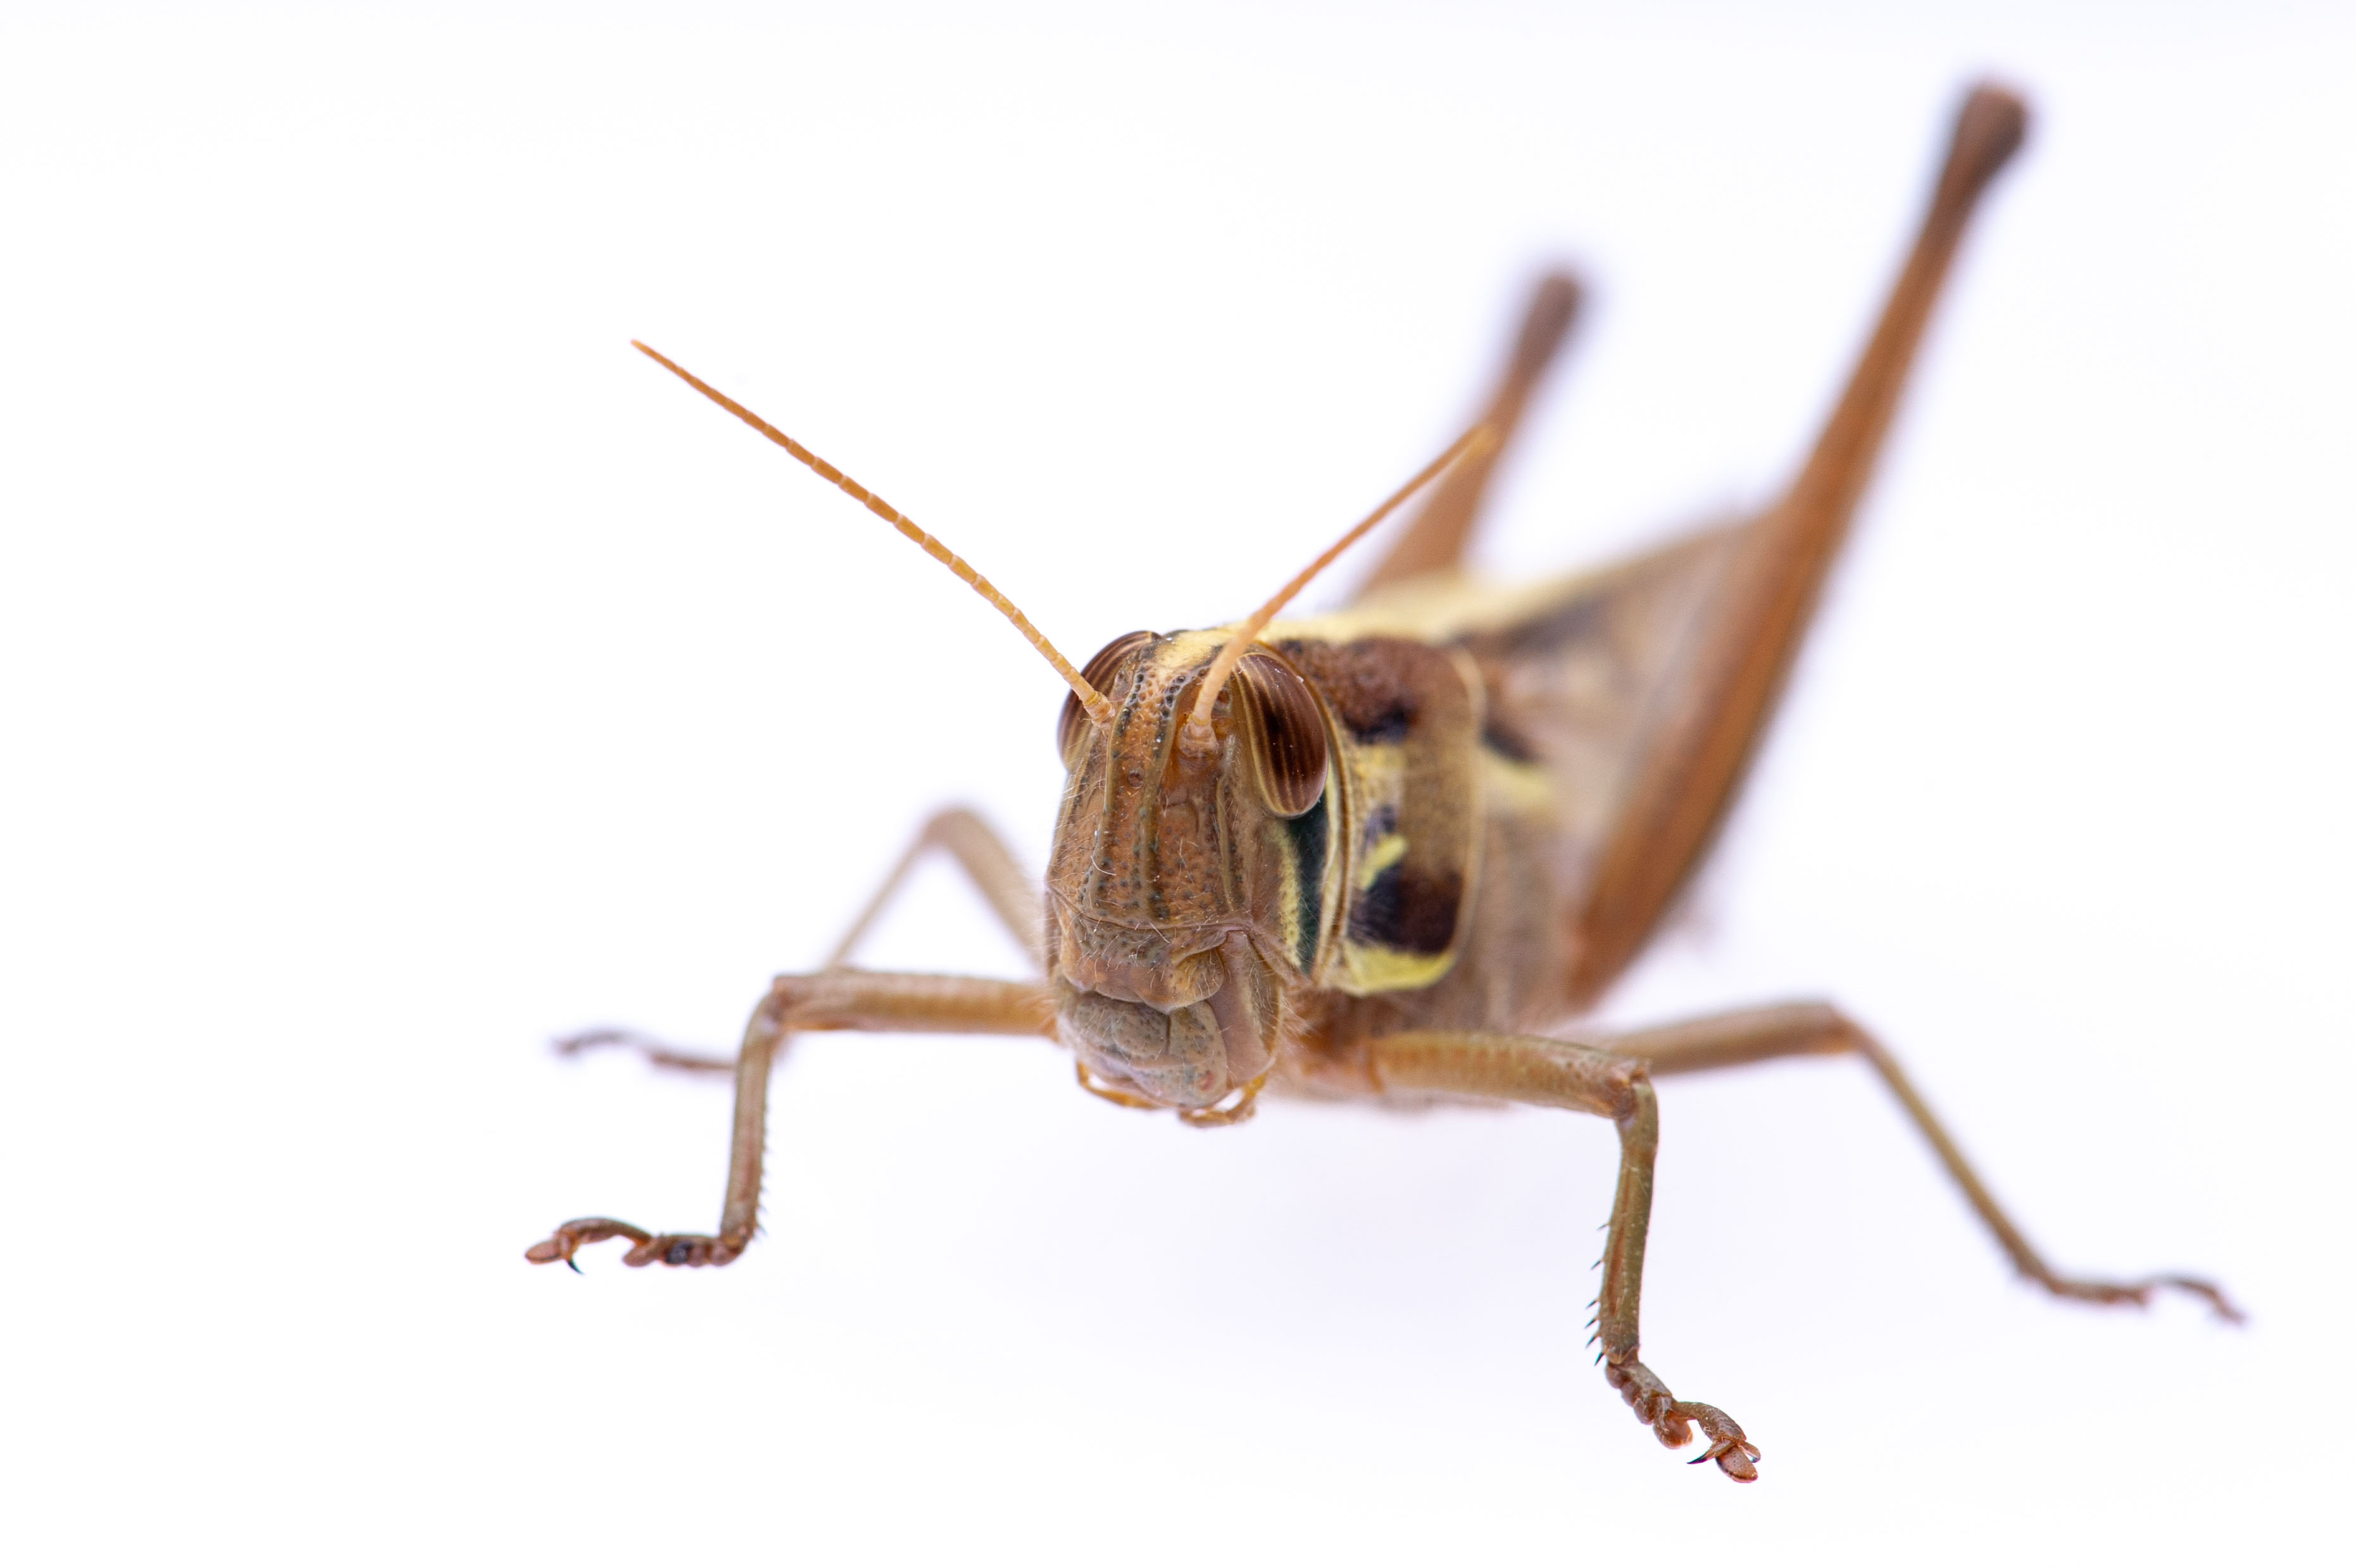 ツチイナゴ 虫の写真と生態なら昆虫写真図鑑 ムシミル